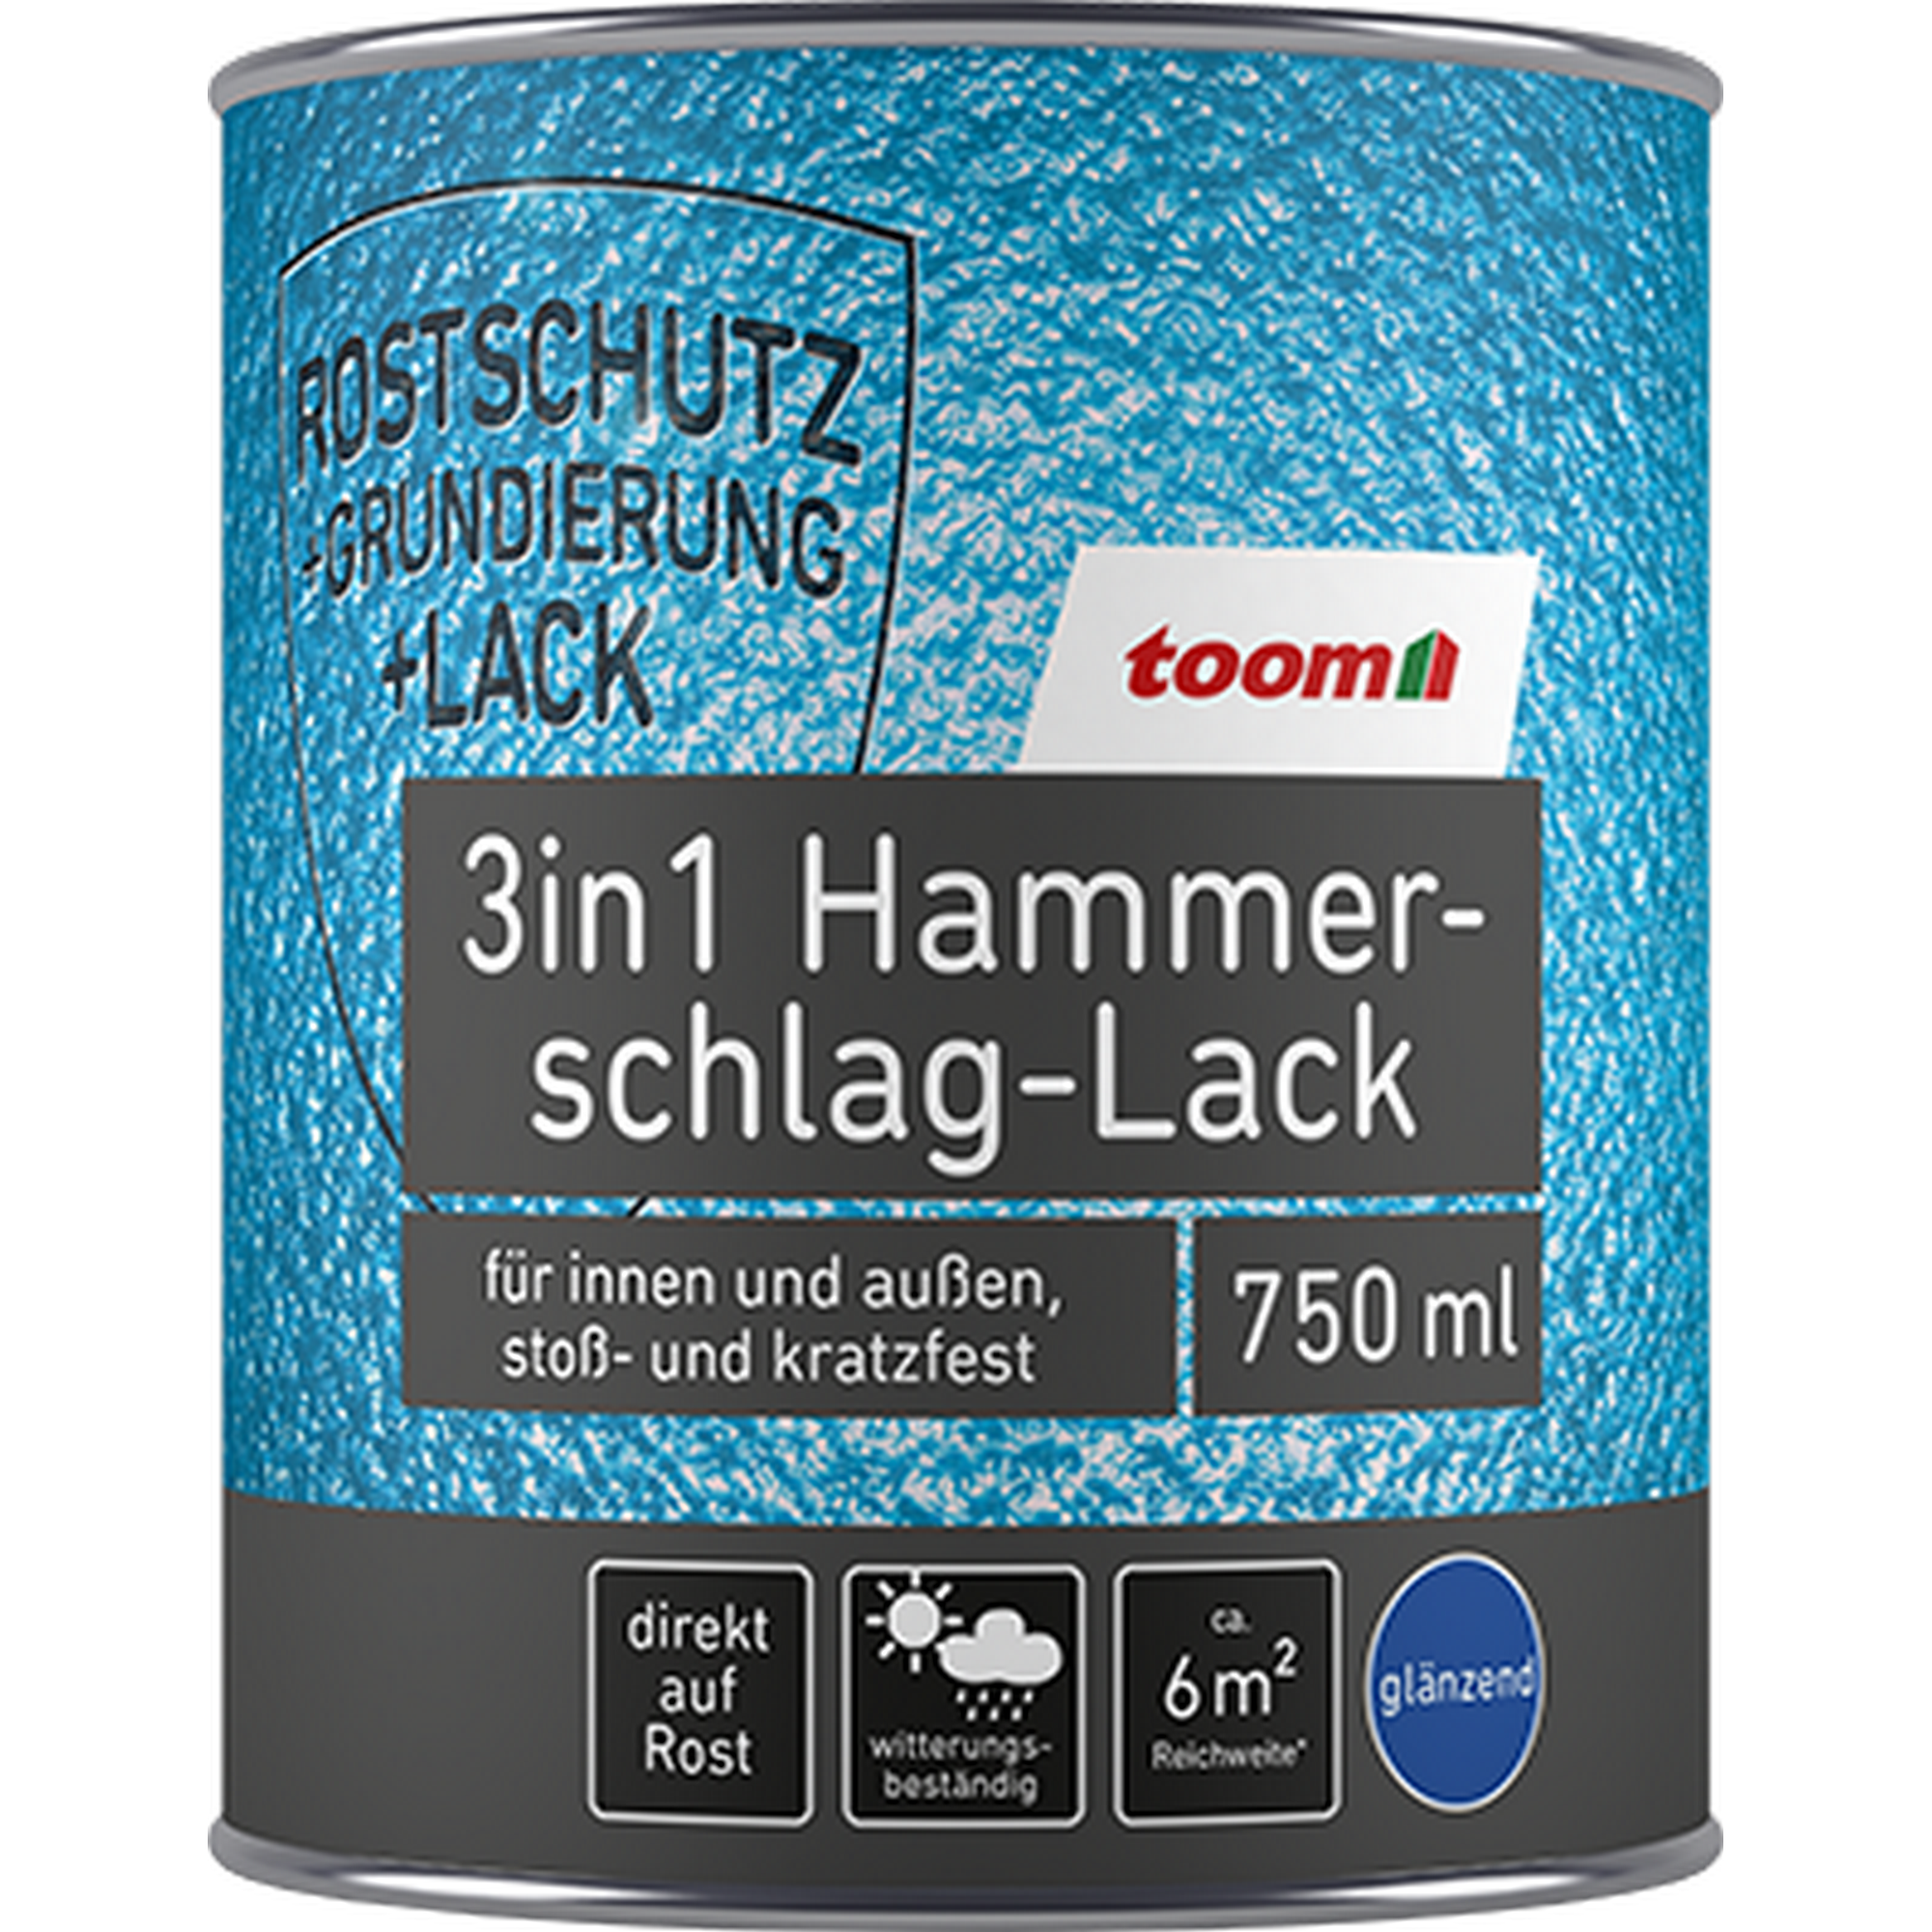 Hammerschlag-Lack silbergrau glänzend 750 ml + product picture